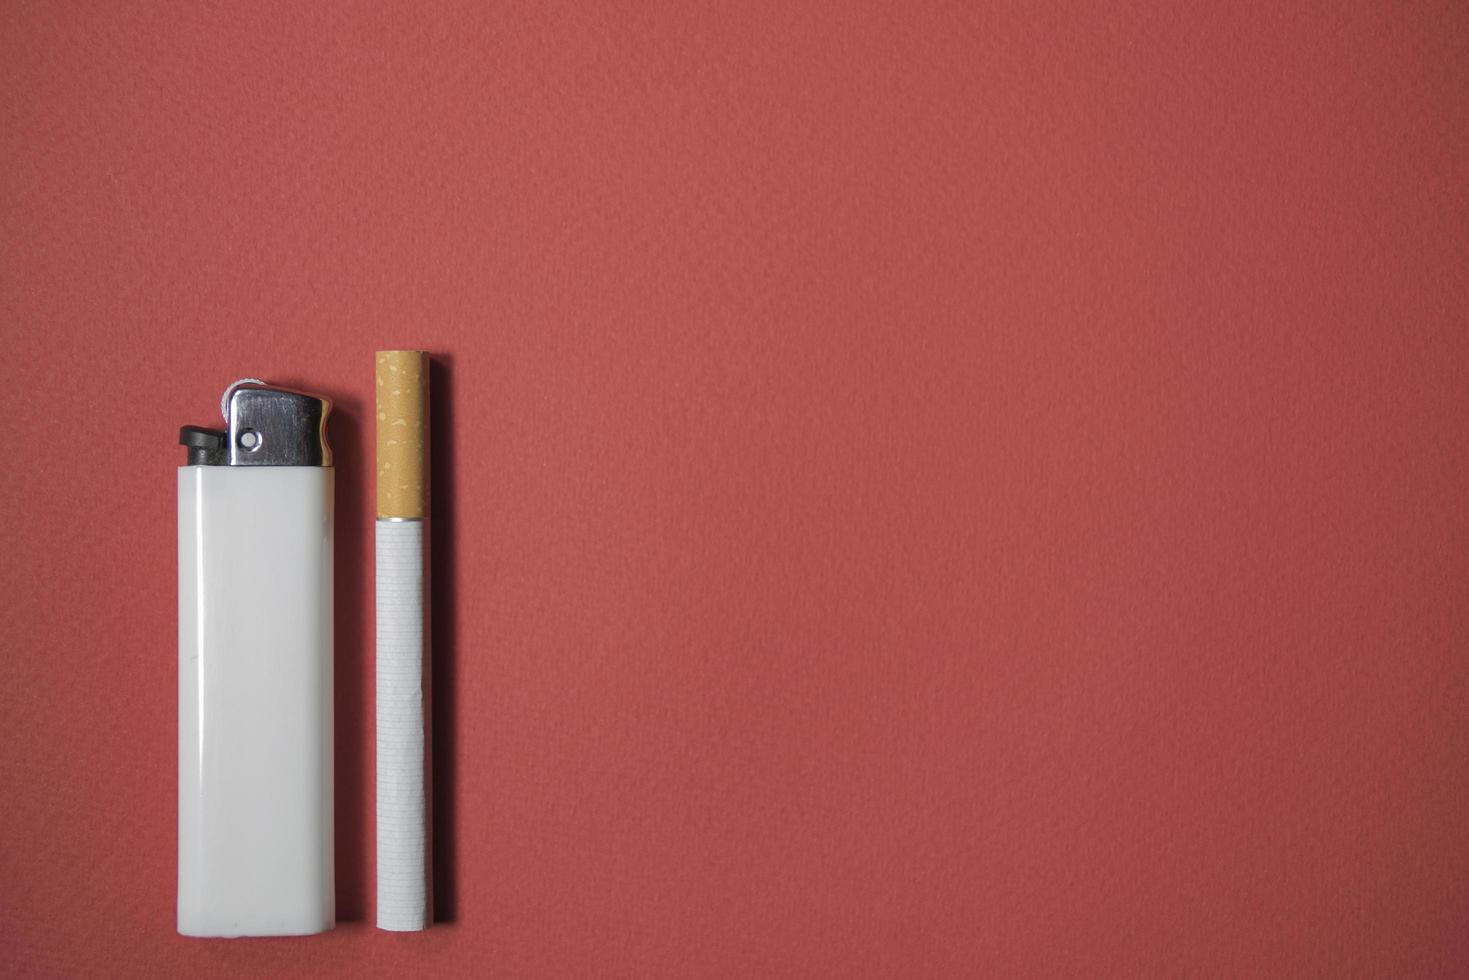 Zigarette und Feuerzeug auf rotem Grund foto